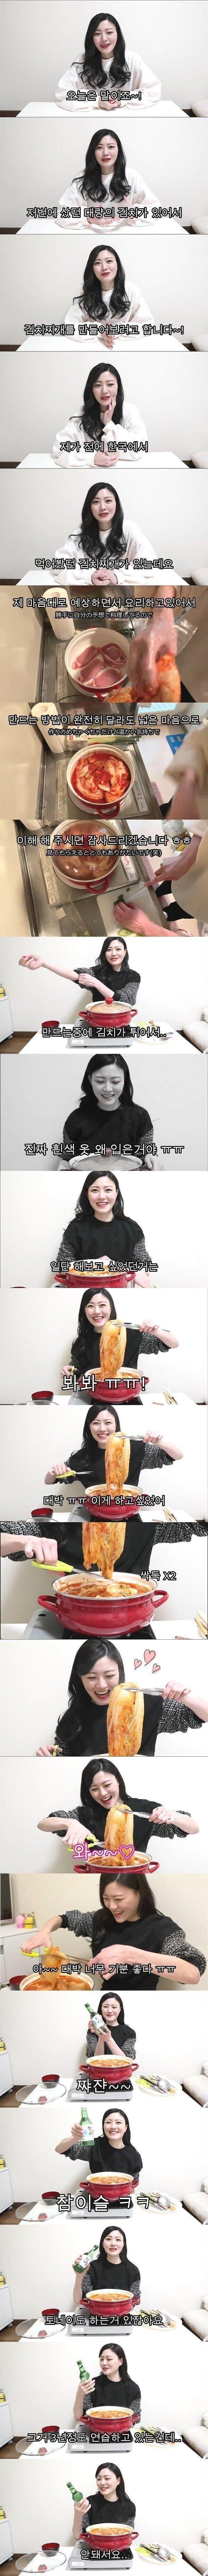 김치찌개랑 소주먹는 일본여자